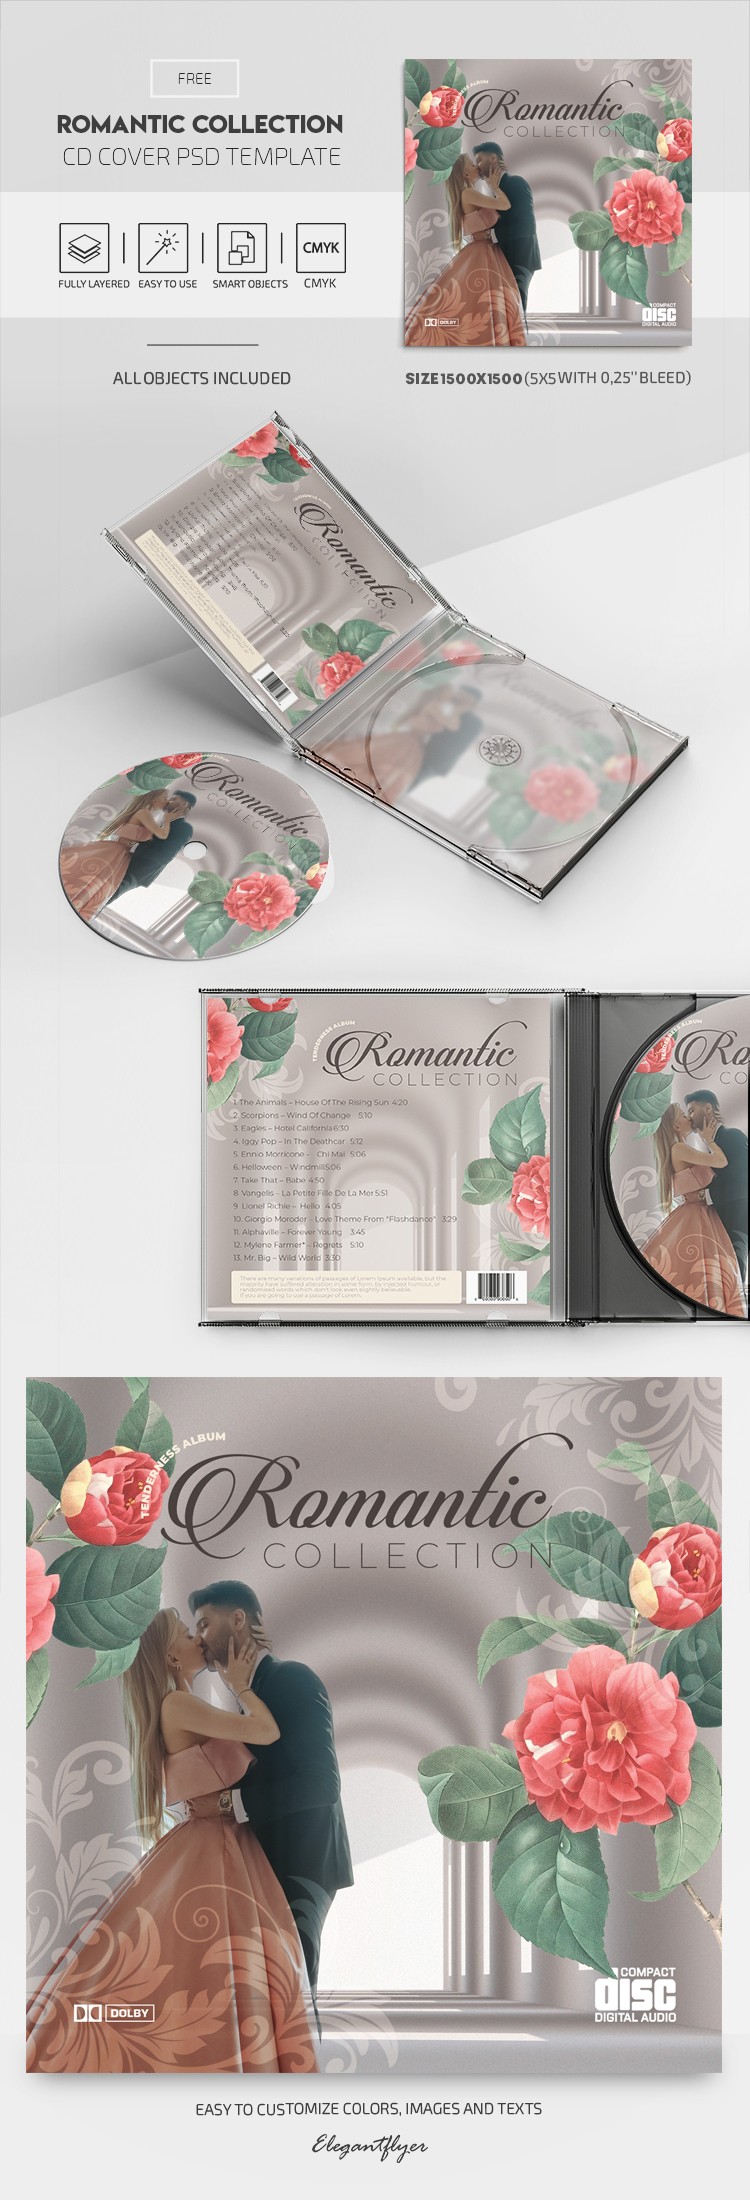 Capa do CD Coleção Romântica by ElegantFlyer